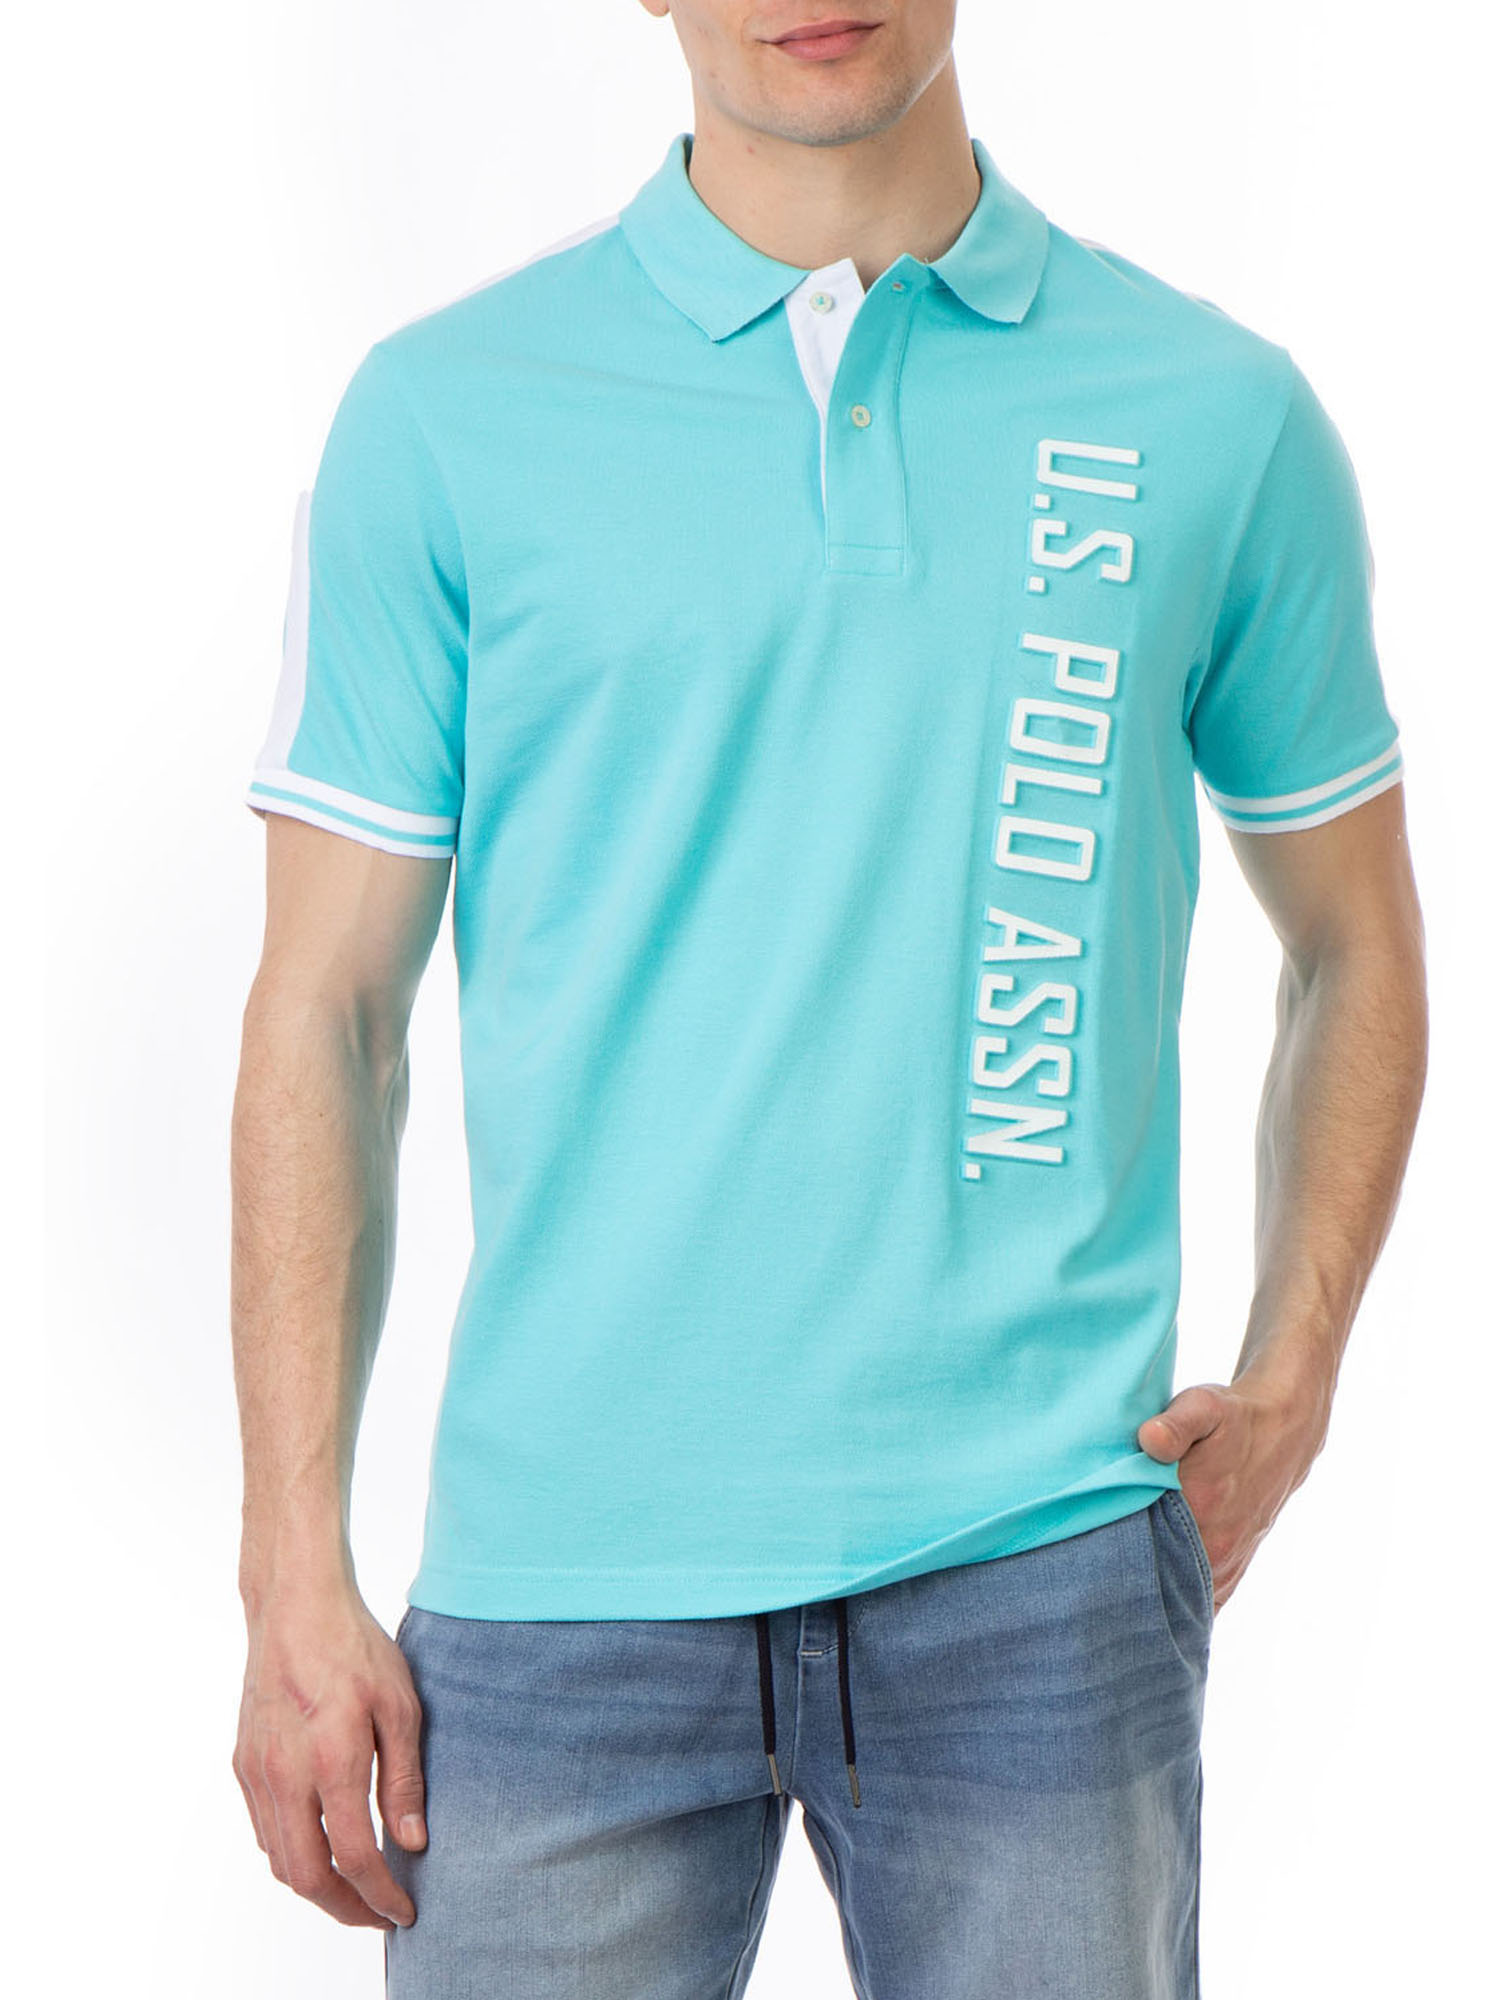 U.S. Polo Assn. Men's Embossed Logo Pique Polo Shirt - image 1 of 6